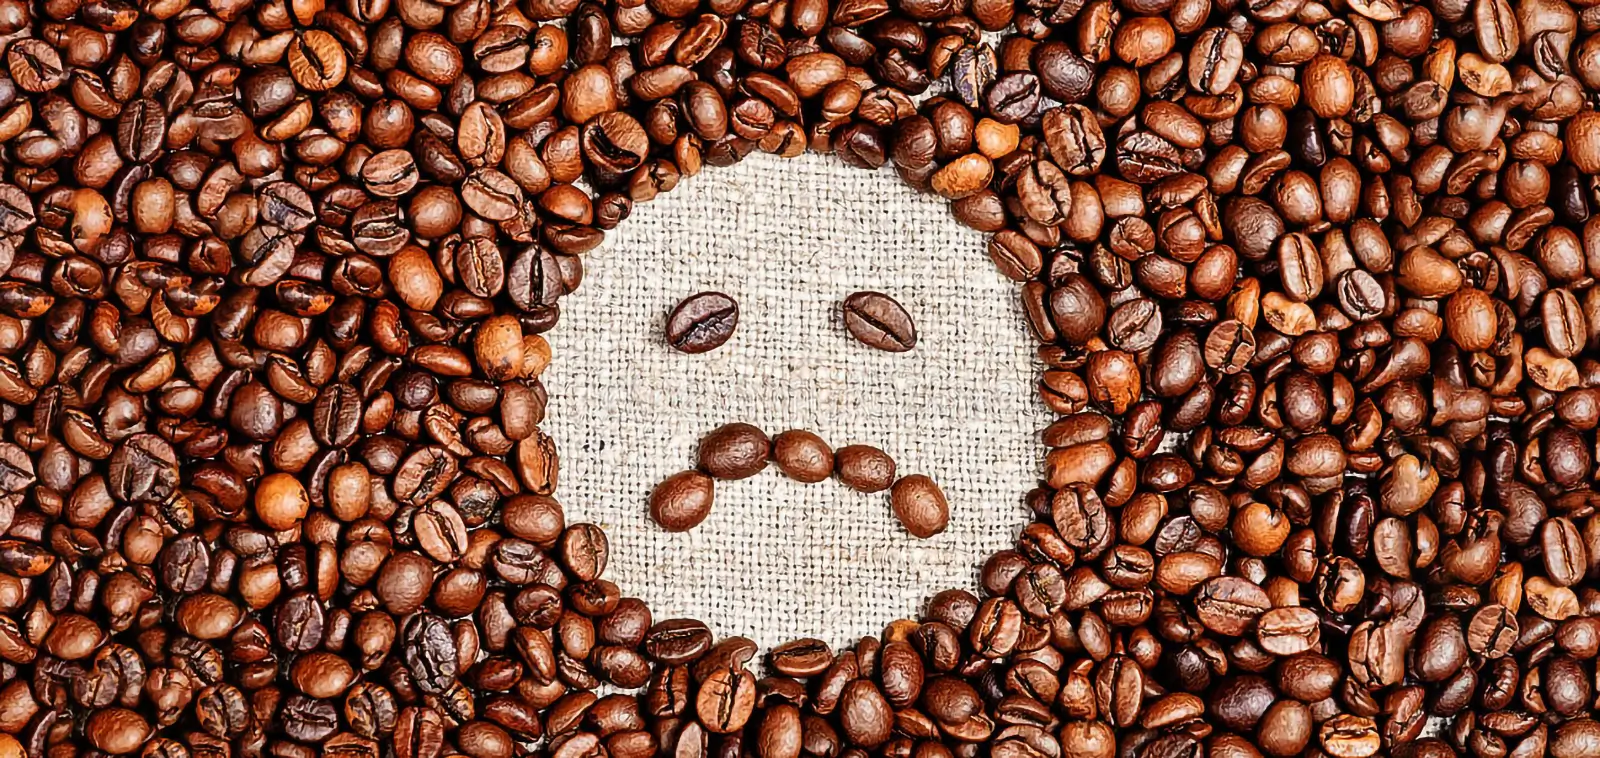 Beneficios del café - No sin riesgos